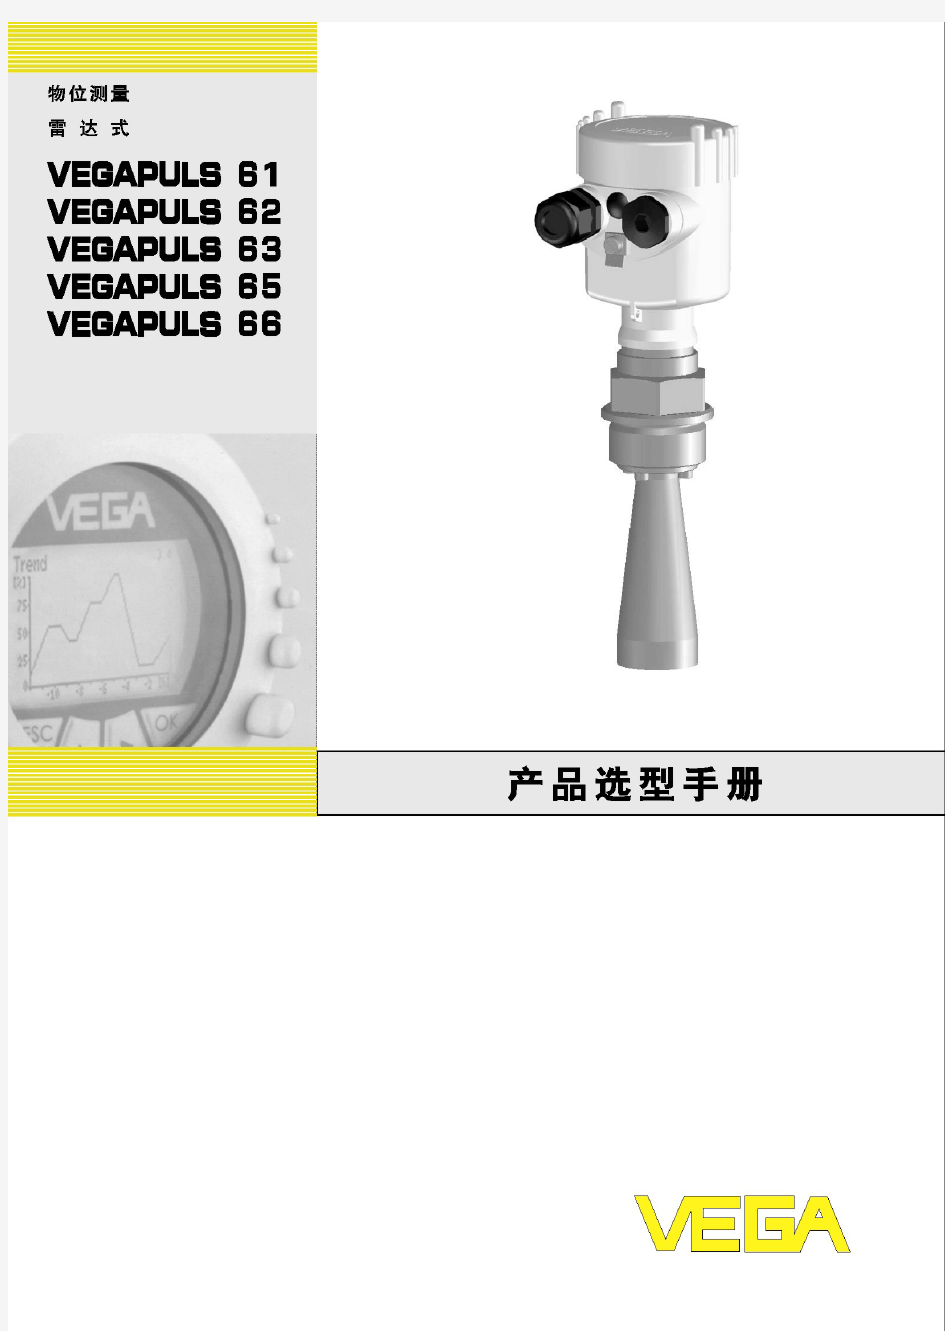 德国VEGA 雷达式物位计中文使用手册